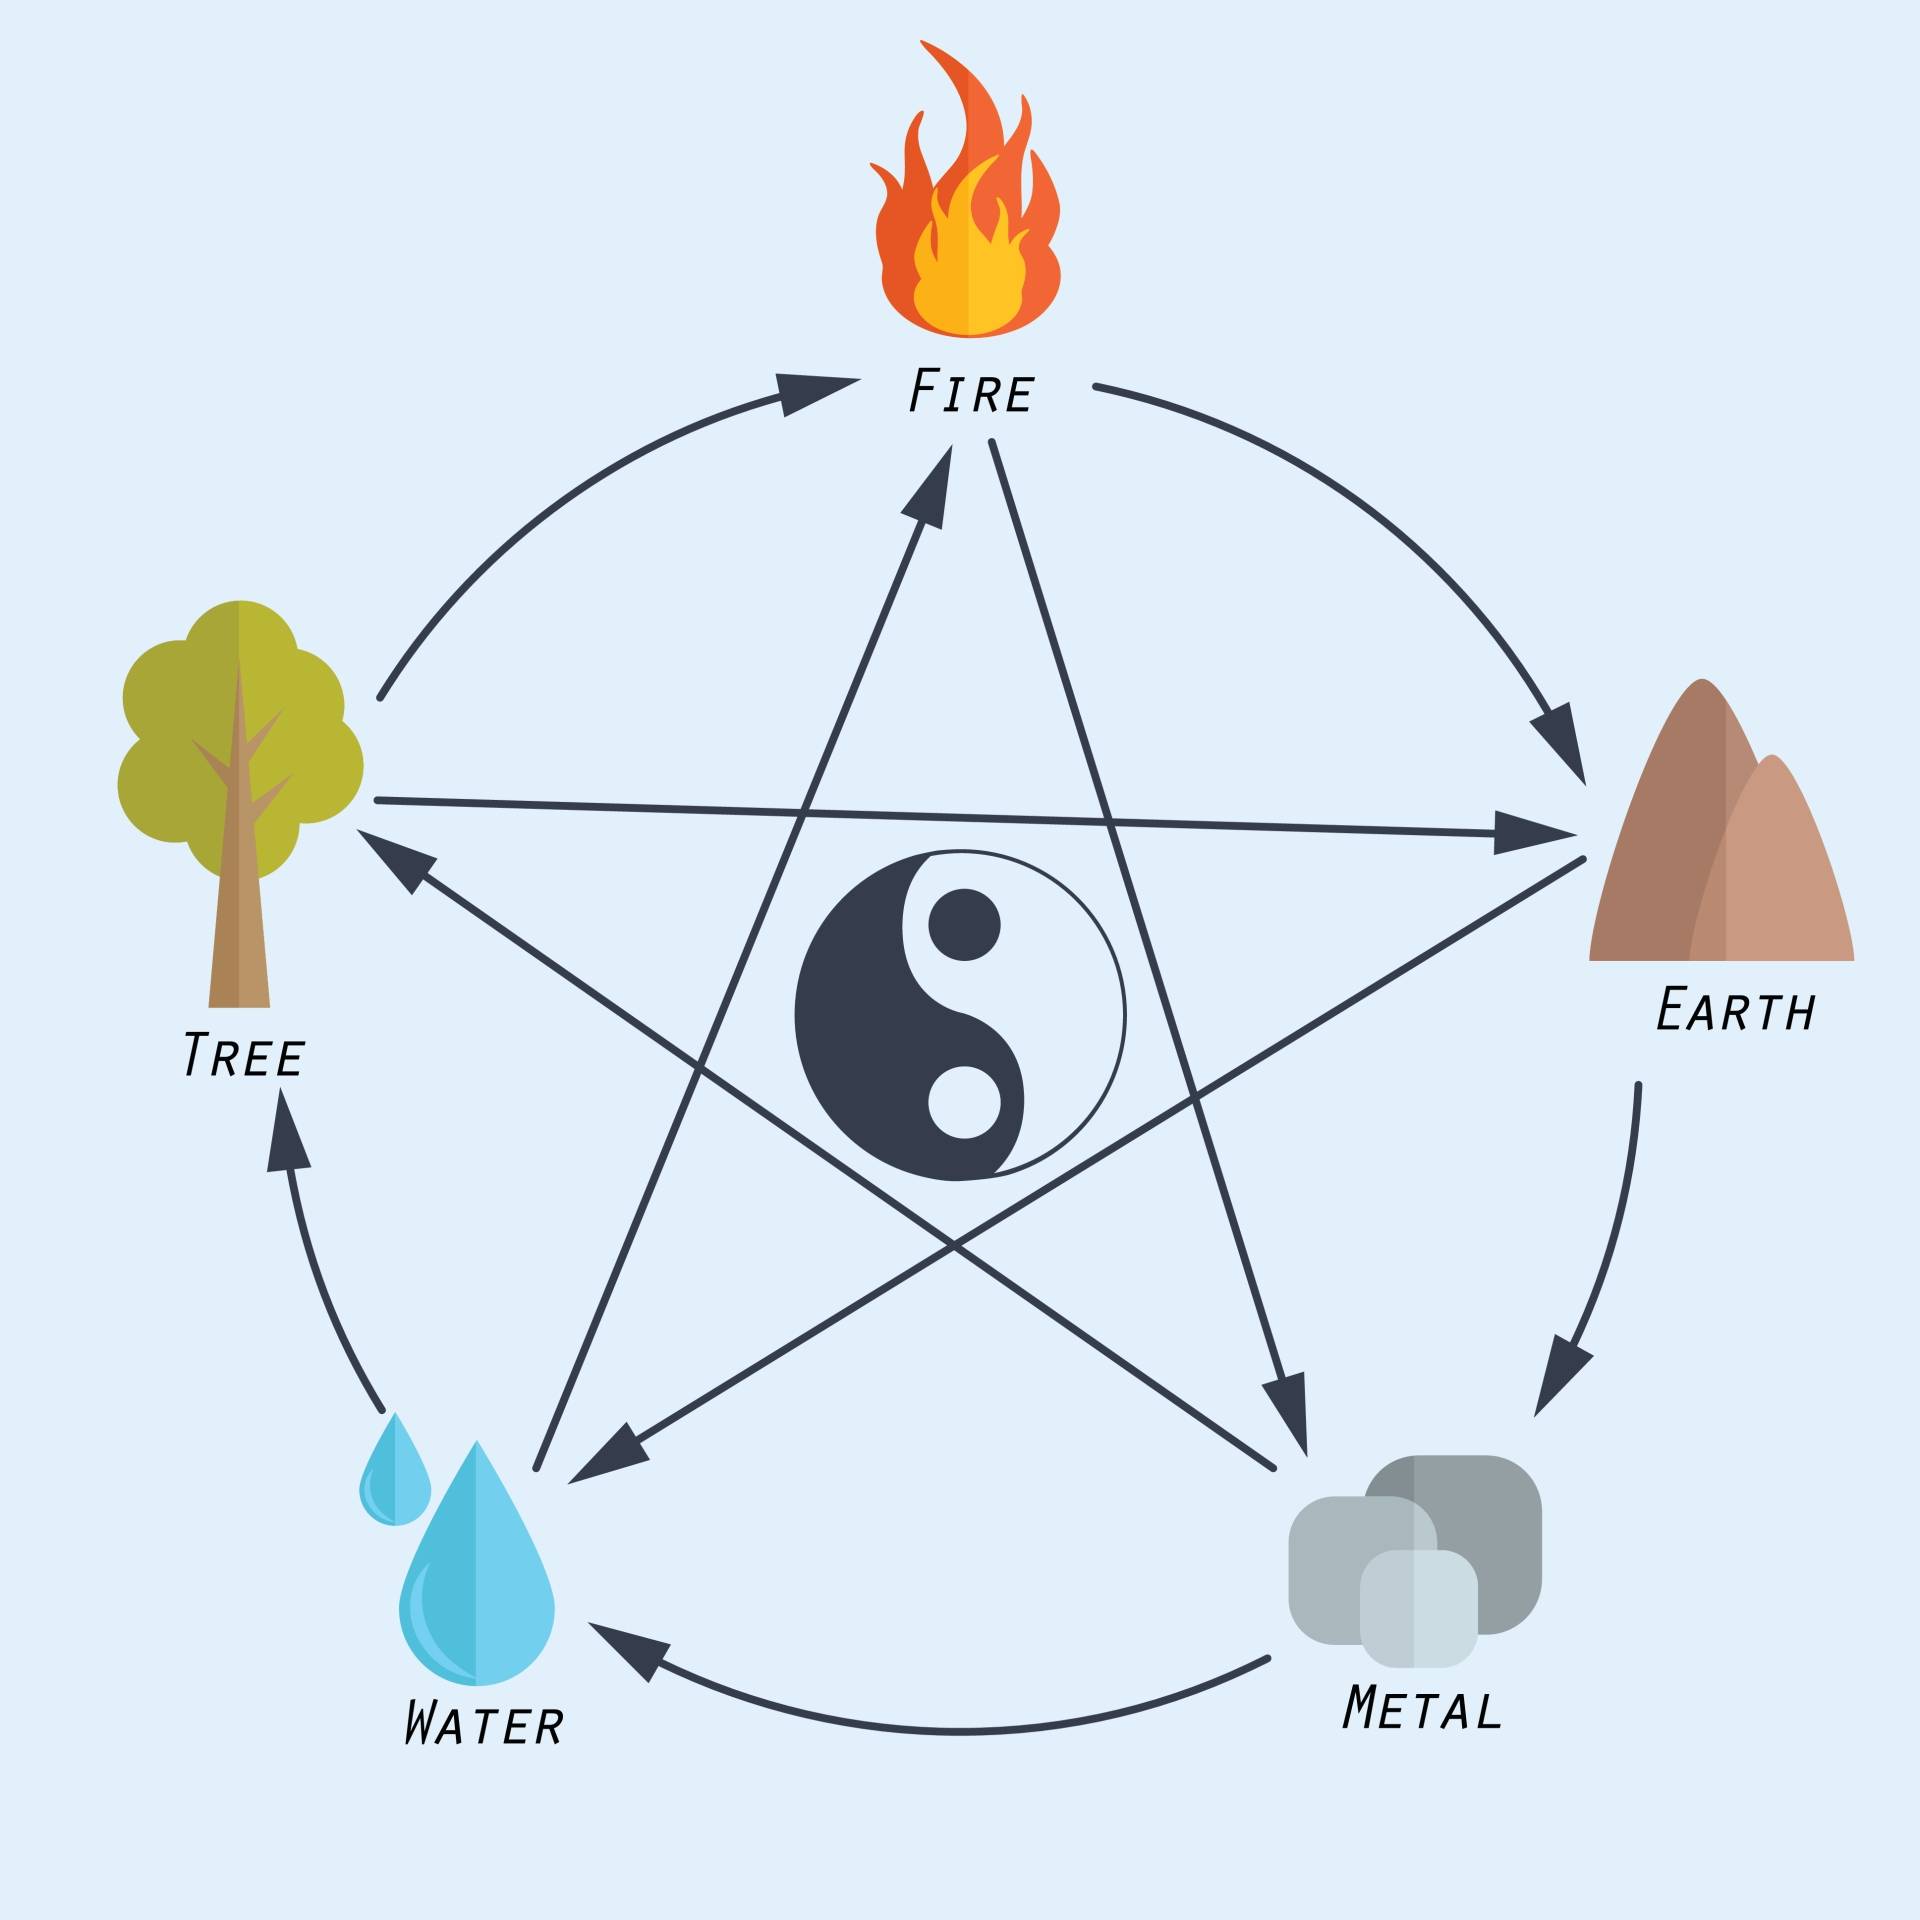 Ilustracja przedstawiająca pięć elementów w feng shui: ogień, woda, metal, ziemia, drzewo.